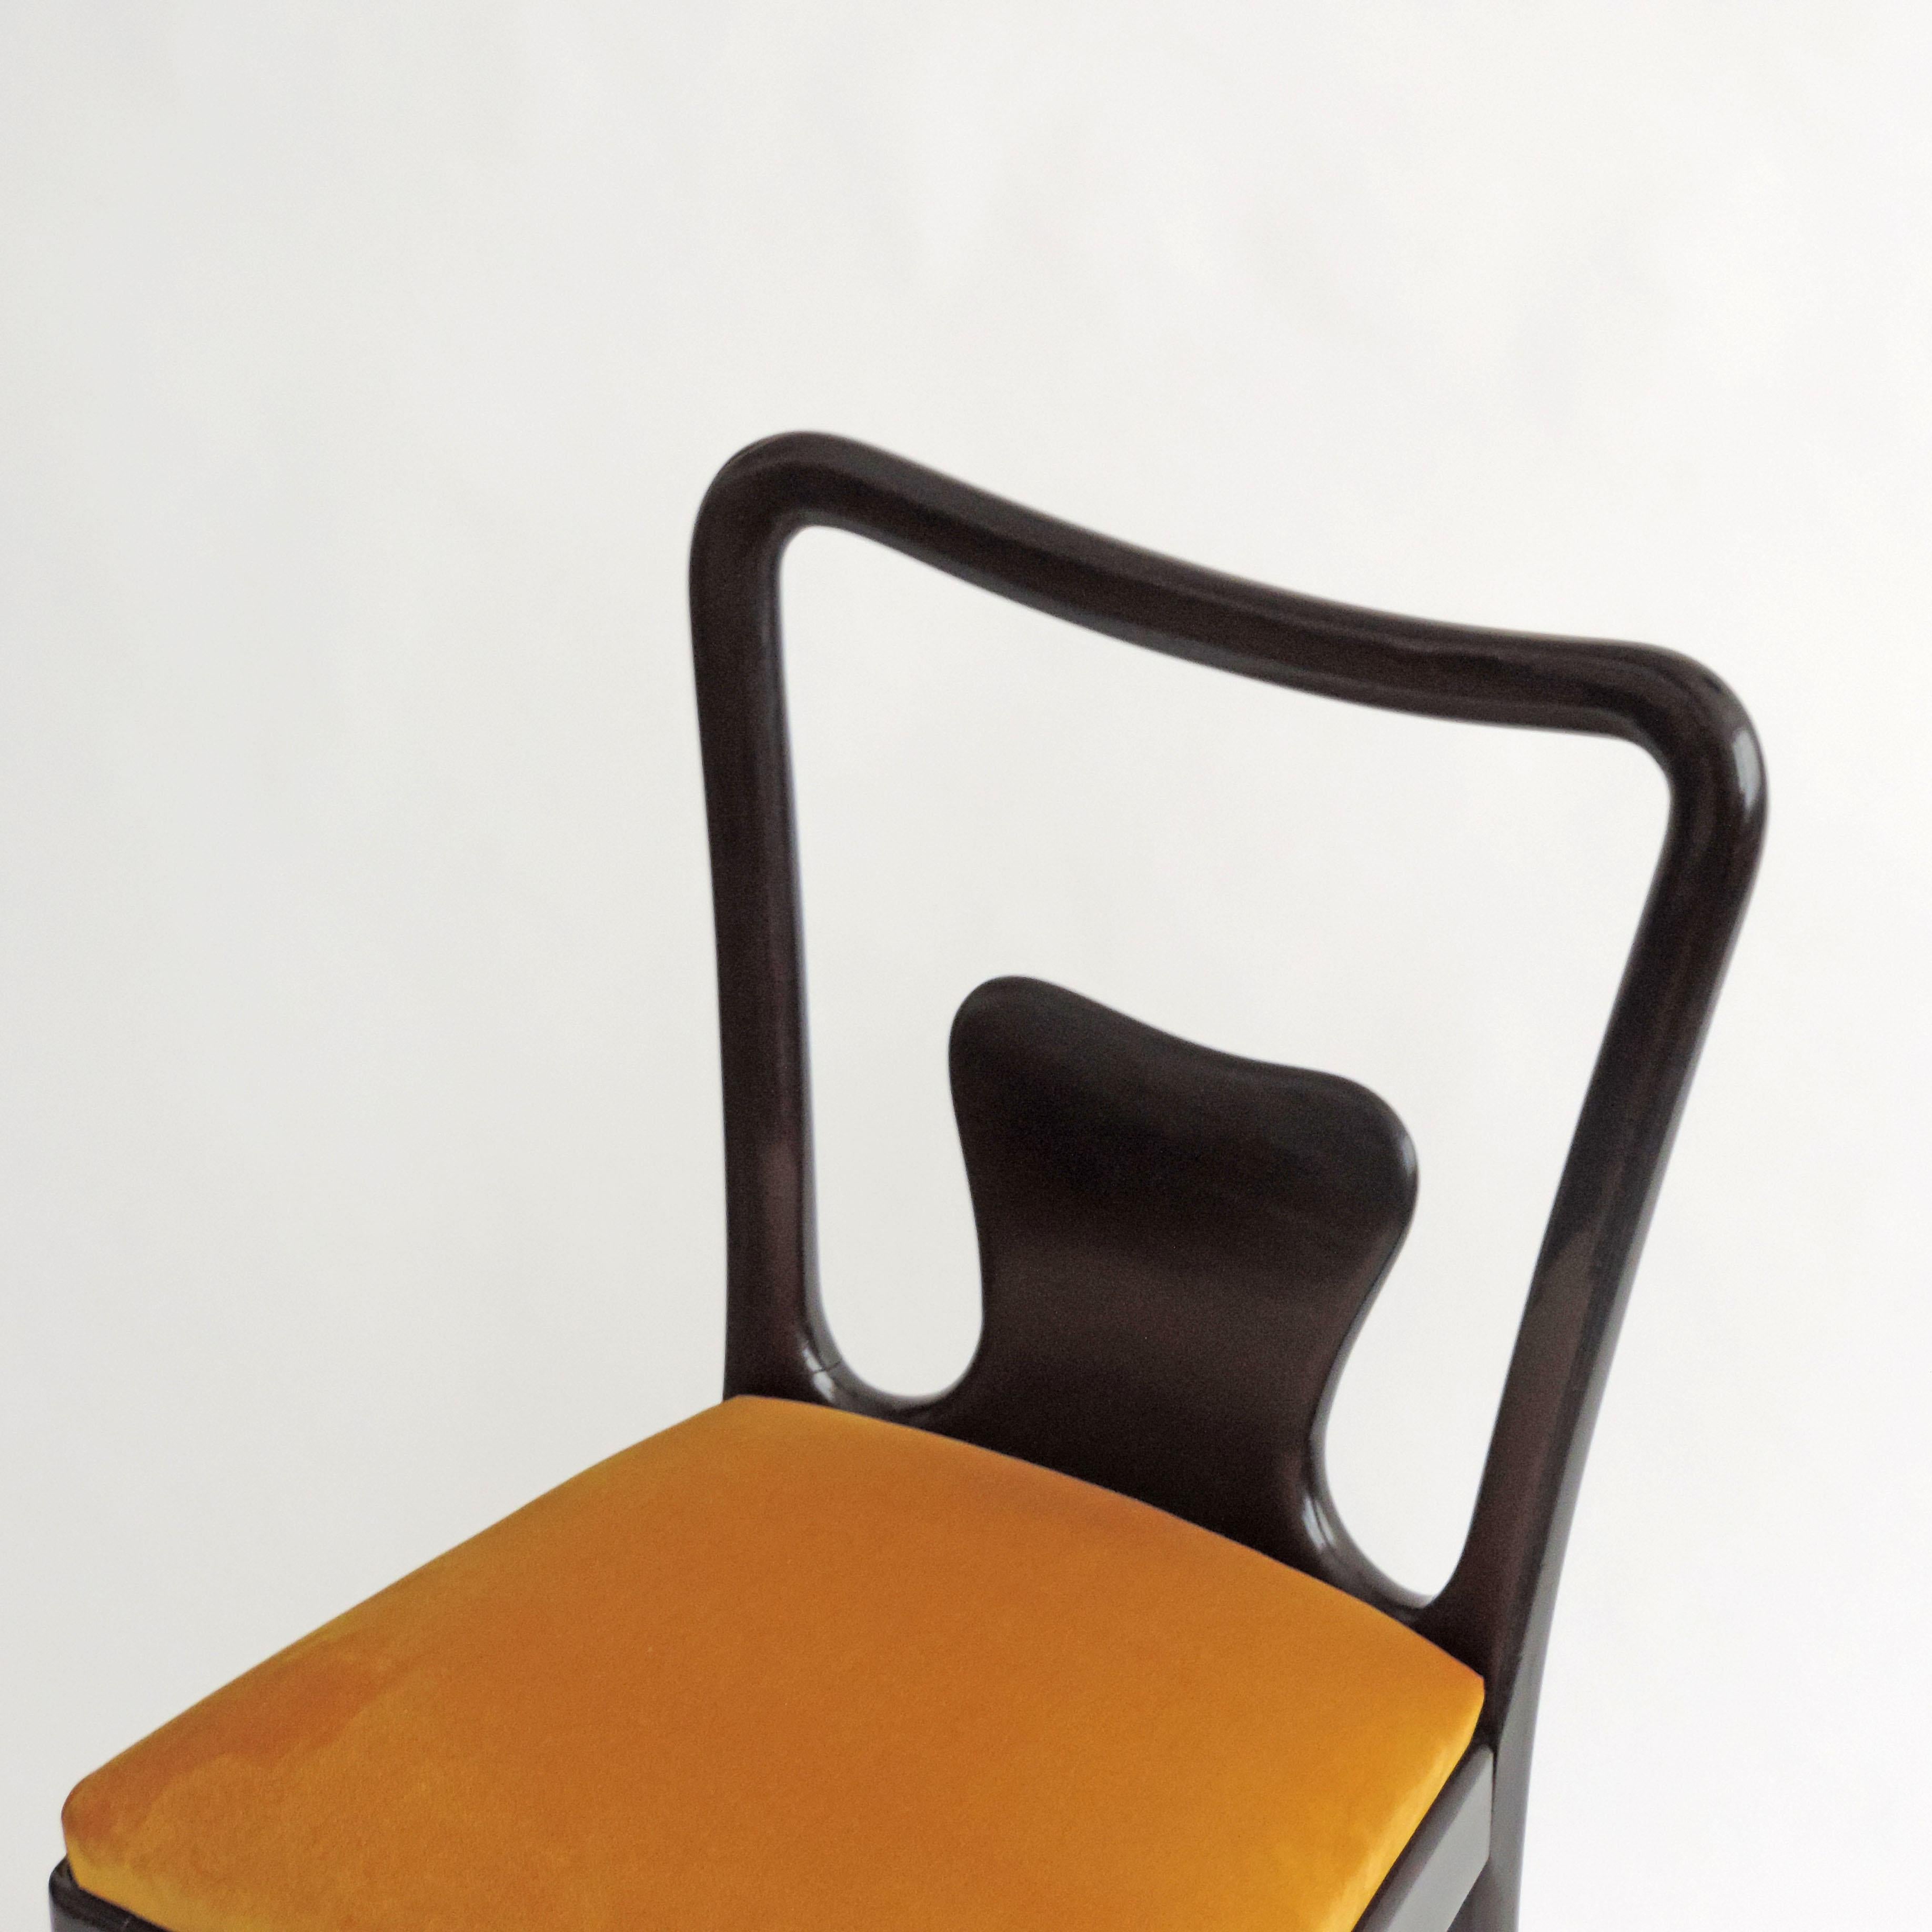 Ensemble de six chaises de salle à manger en bois teinté et velours jaune attribuées à l'architecte italien Guglielmo Ulrich.
Magnifique travail artisanal dans la sculpture du bois.
Siège très robuste.